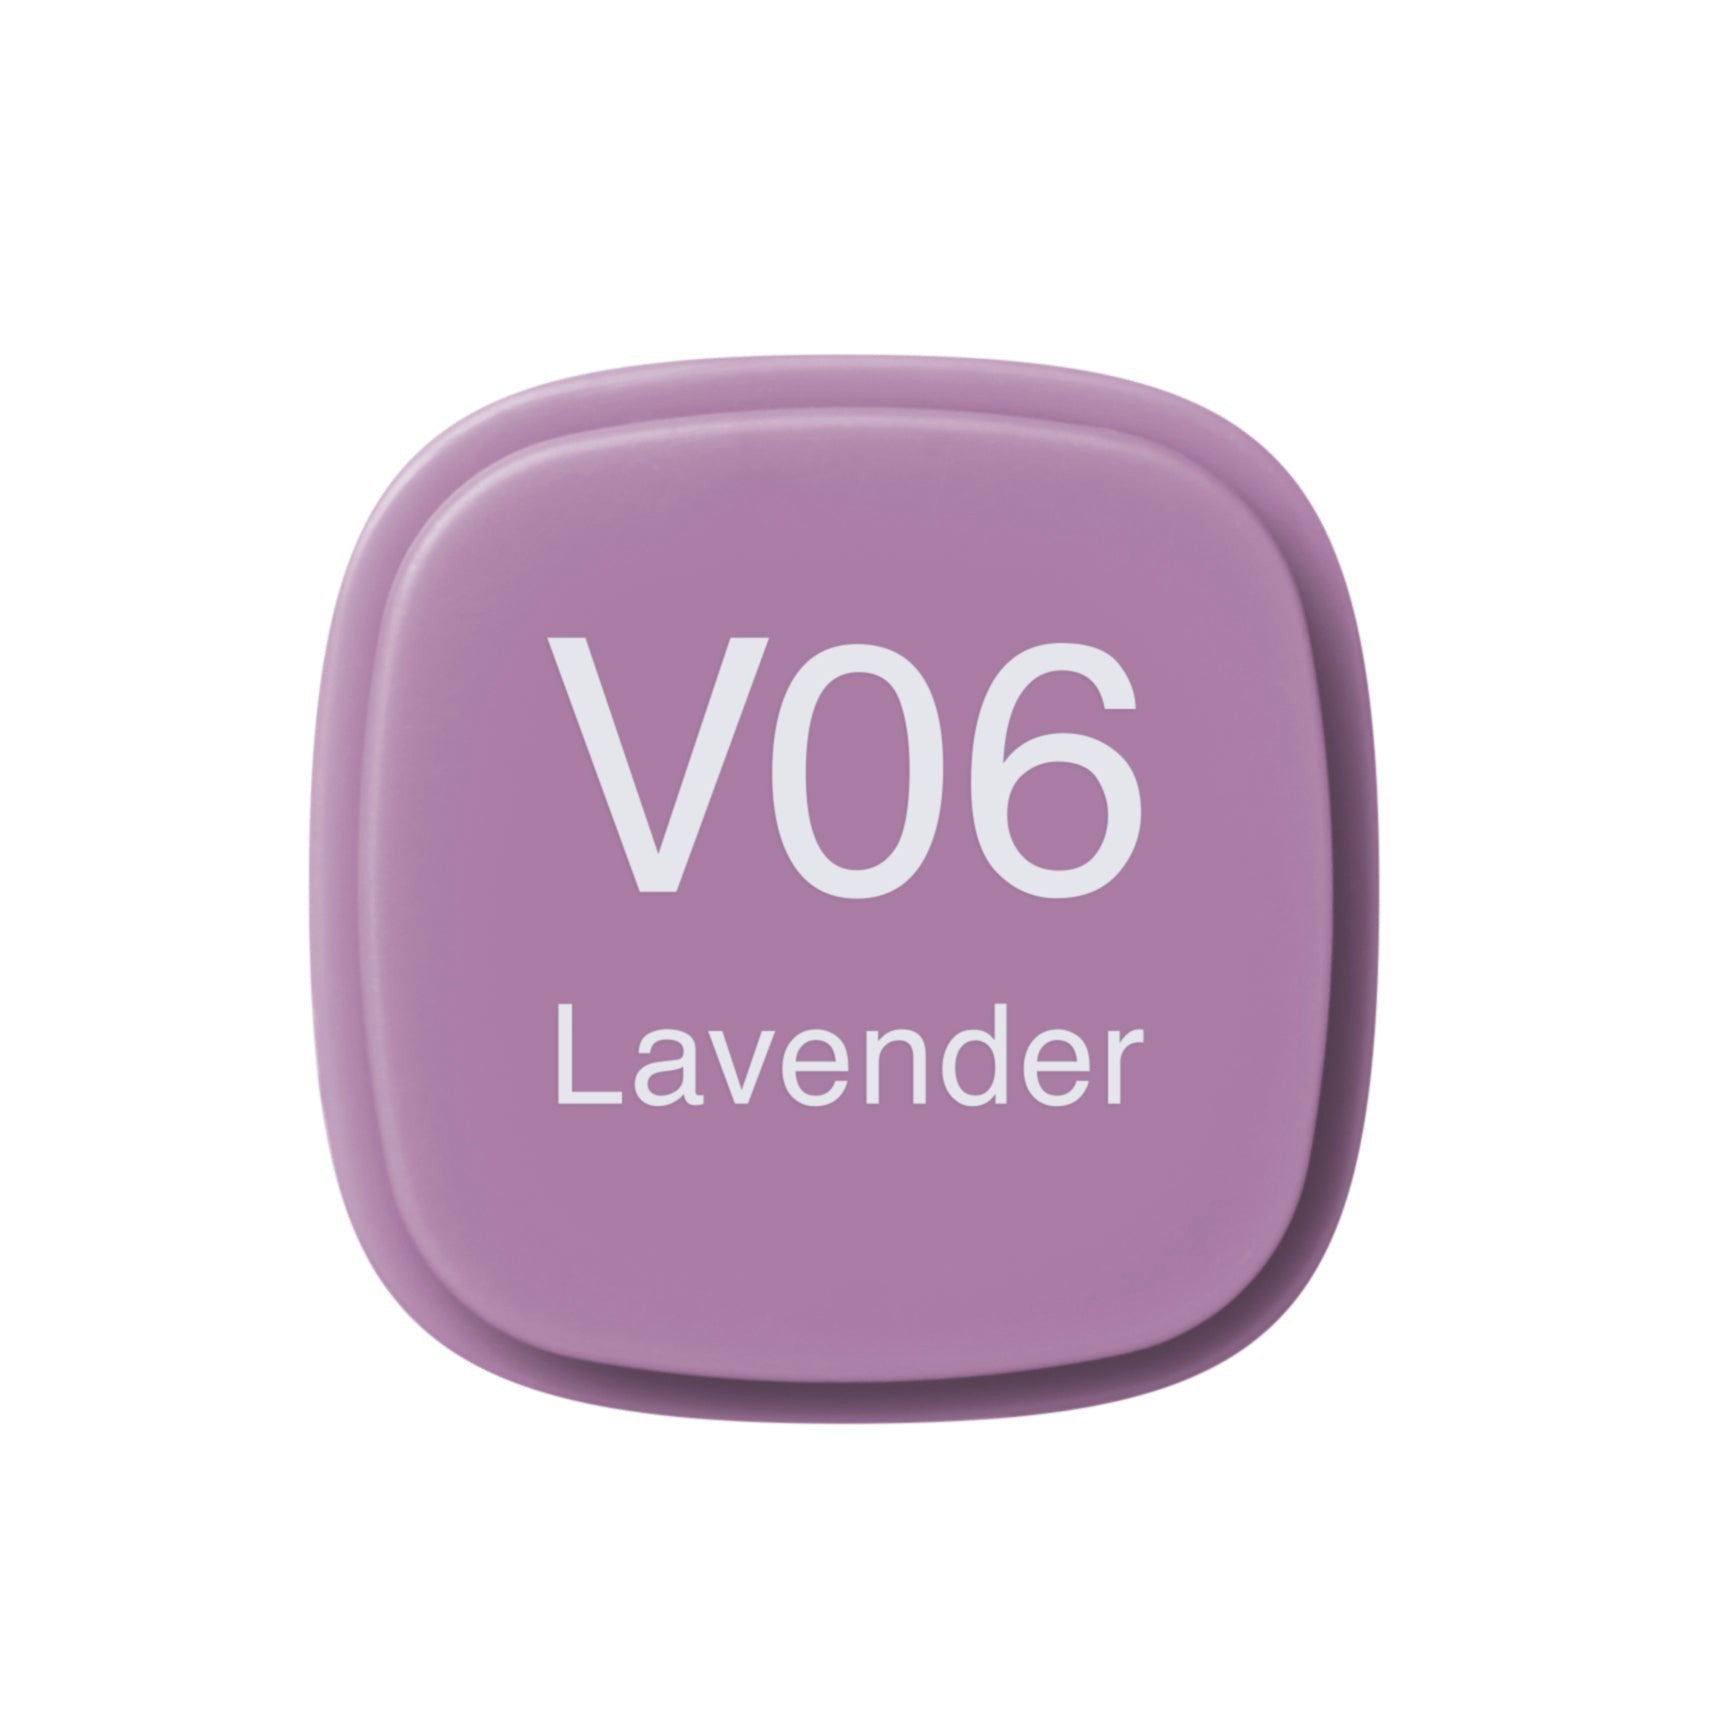 Copic - Original Marker - Lavender - V06-ScrapbookPal